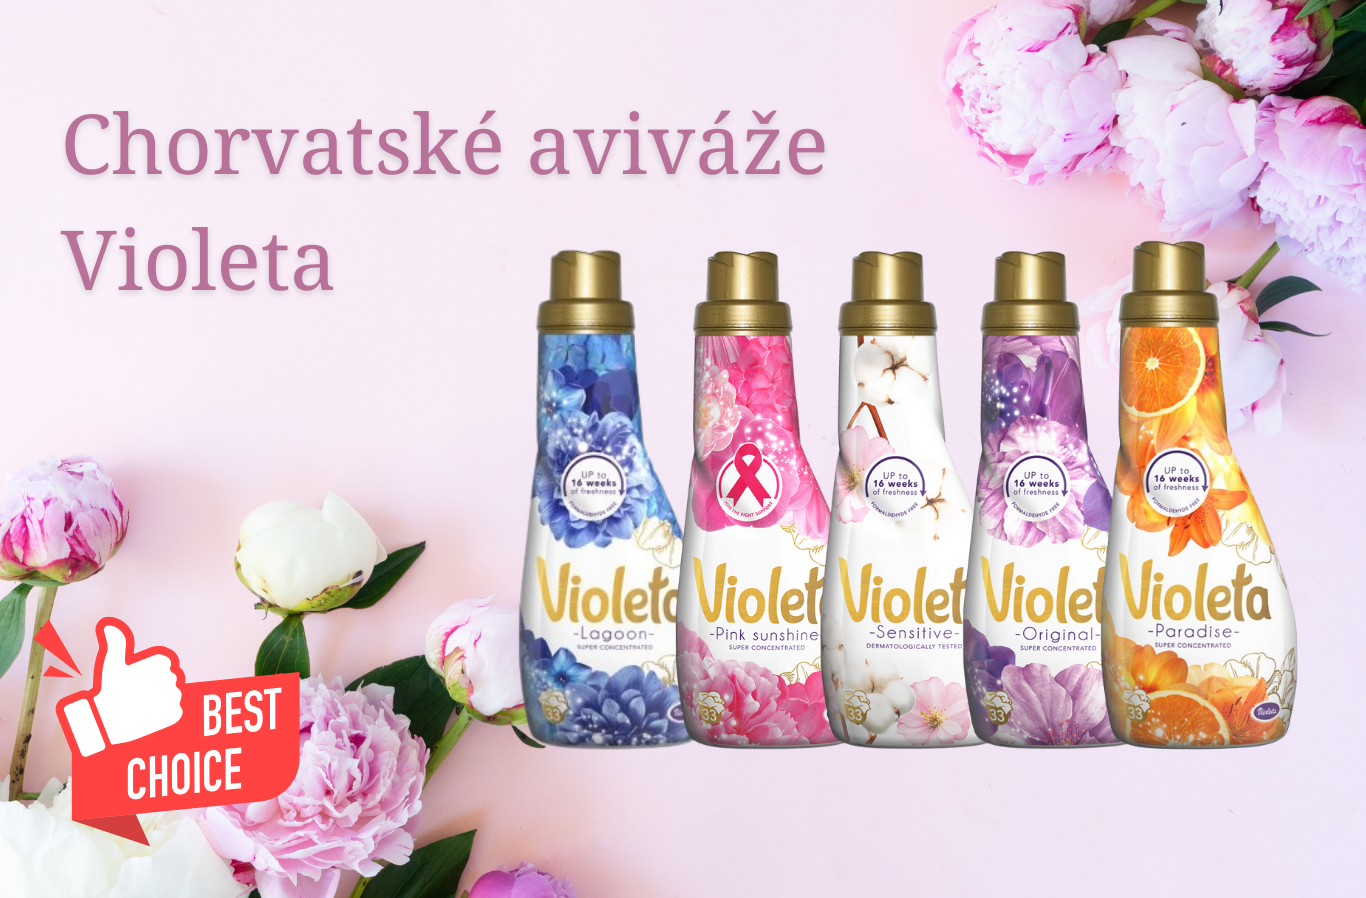 Chorvatské aviváže Violeta